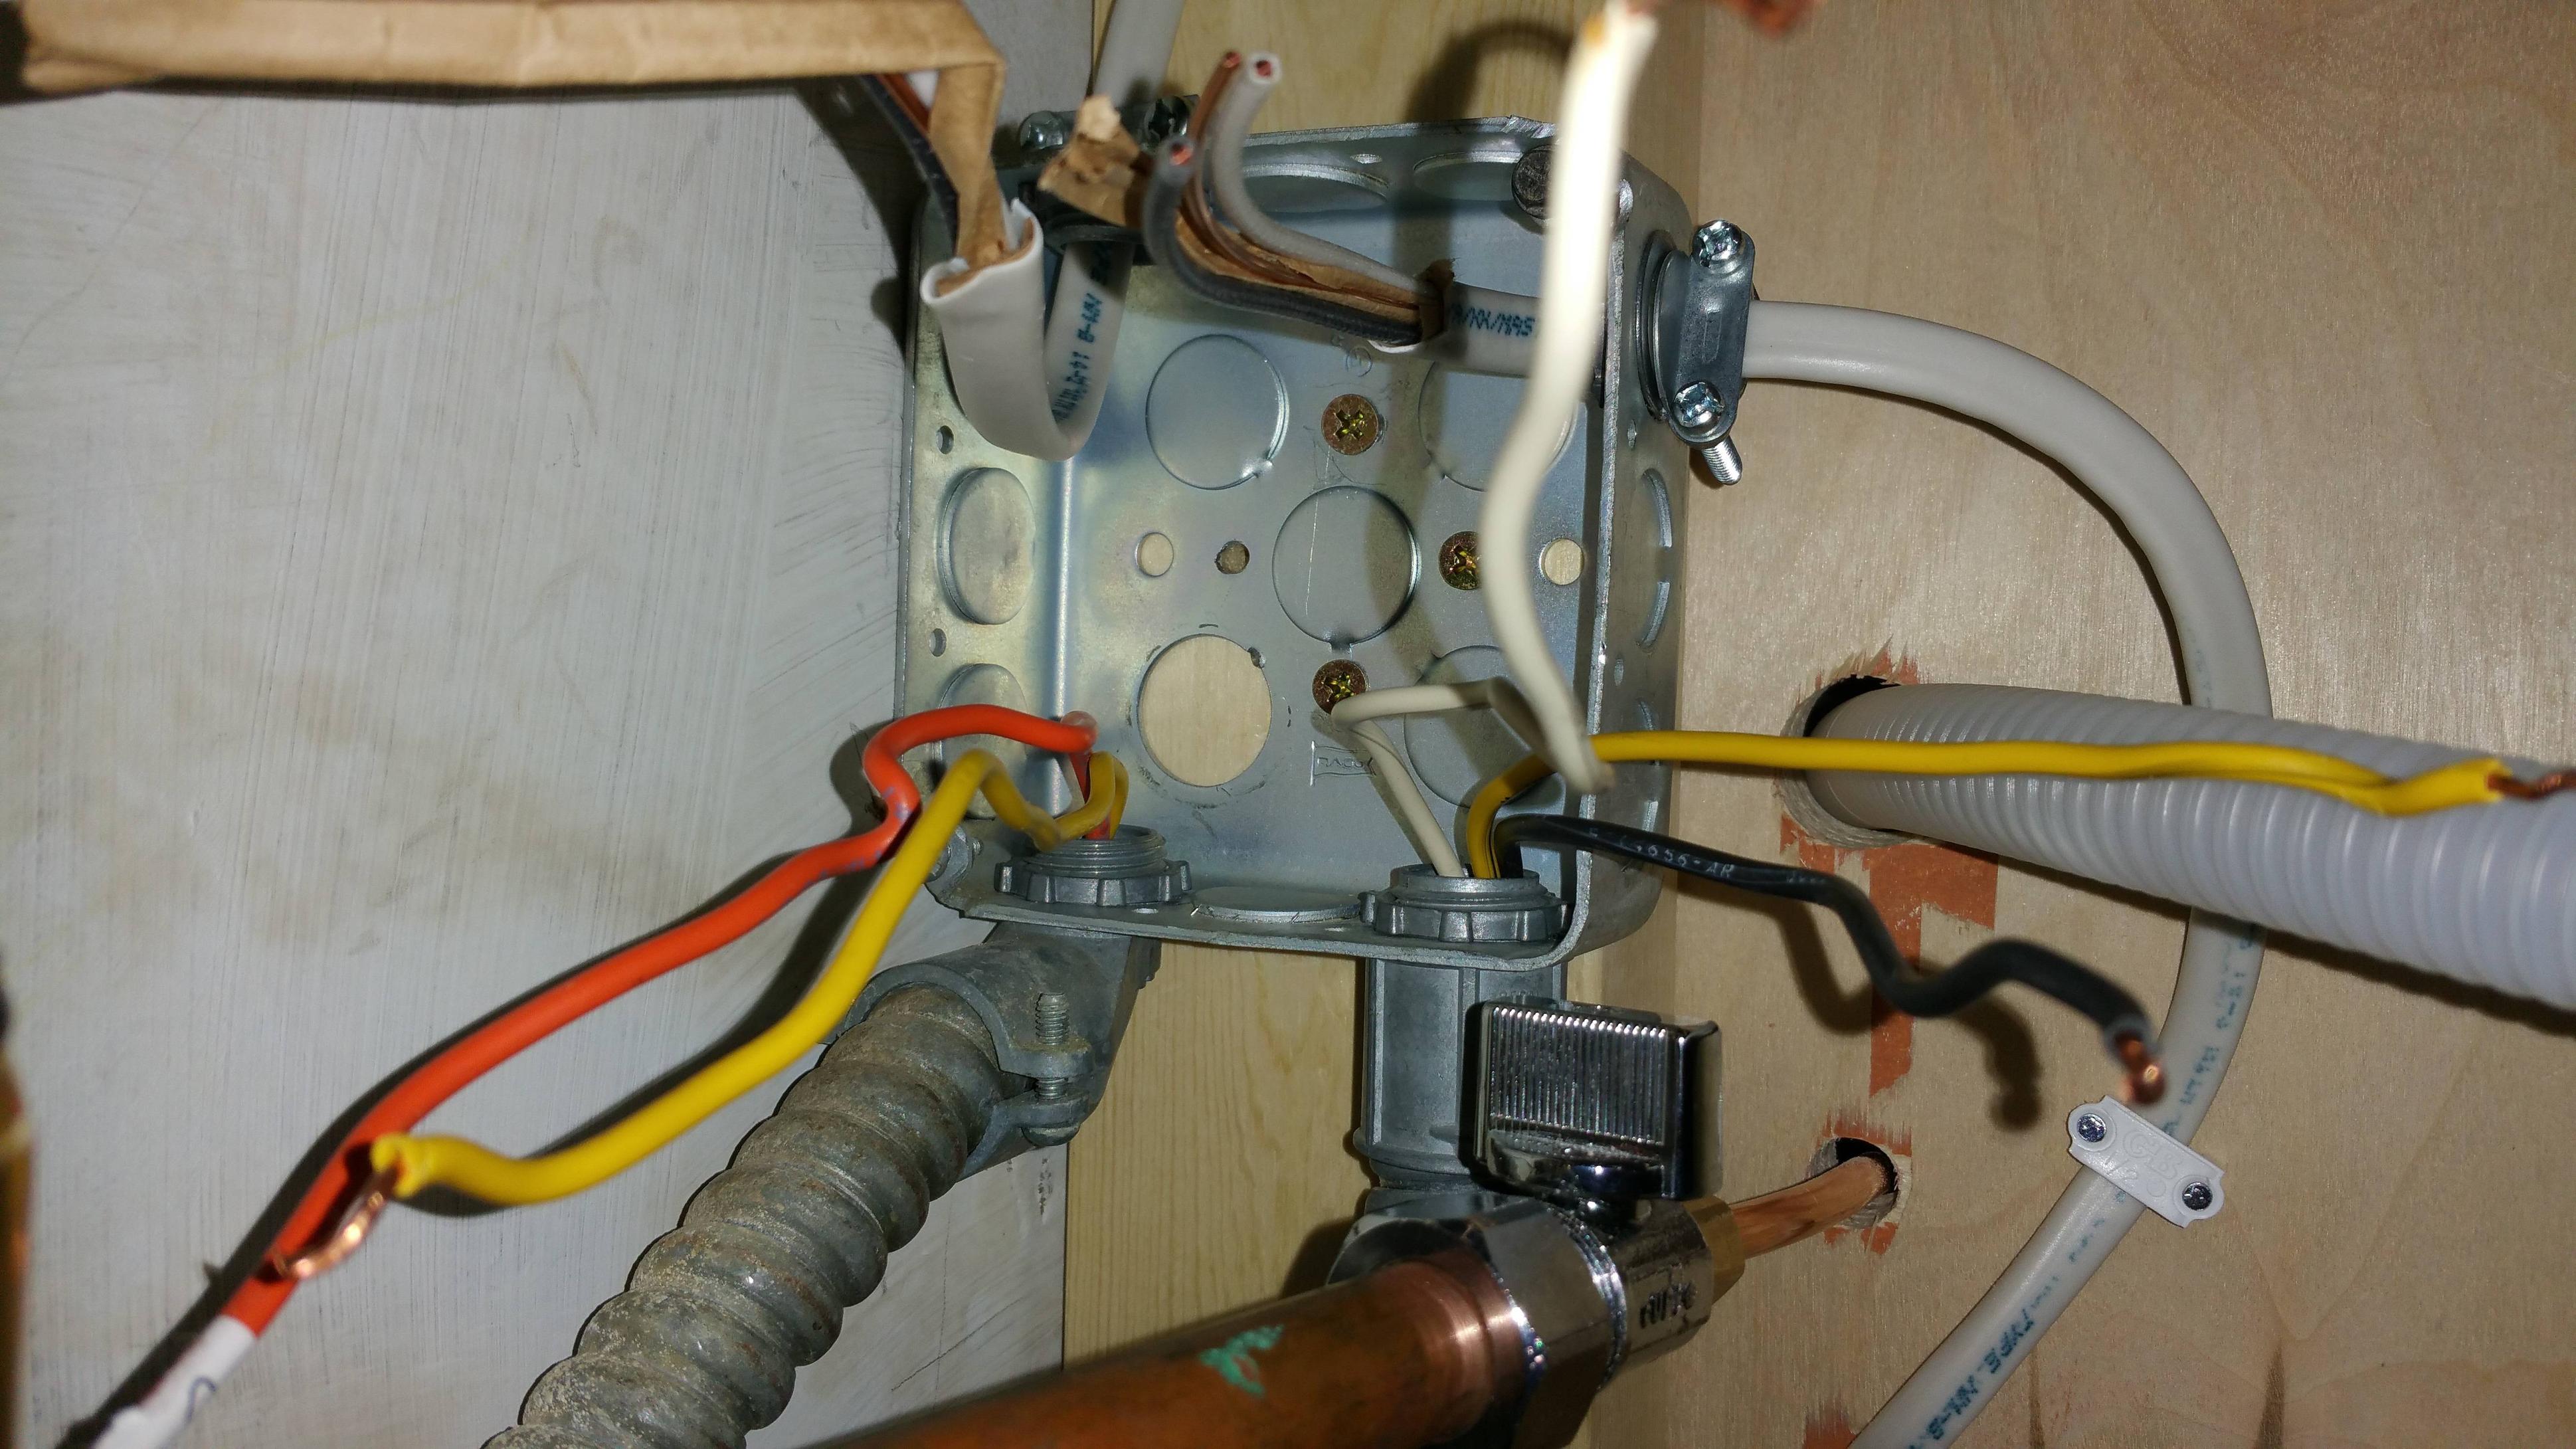 wiring a dishwasher and garbage disposal diagram